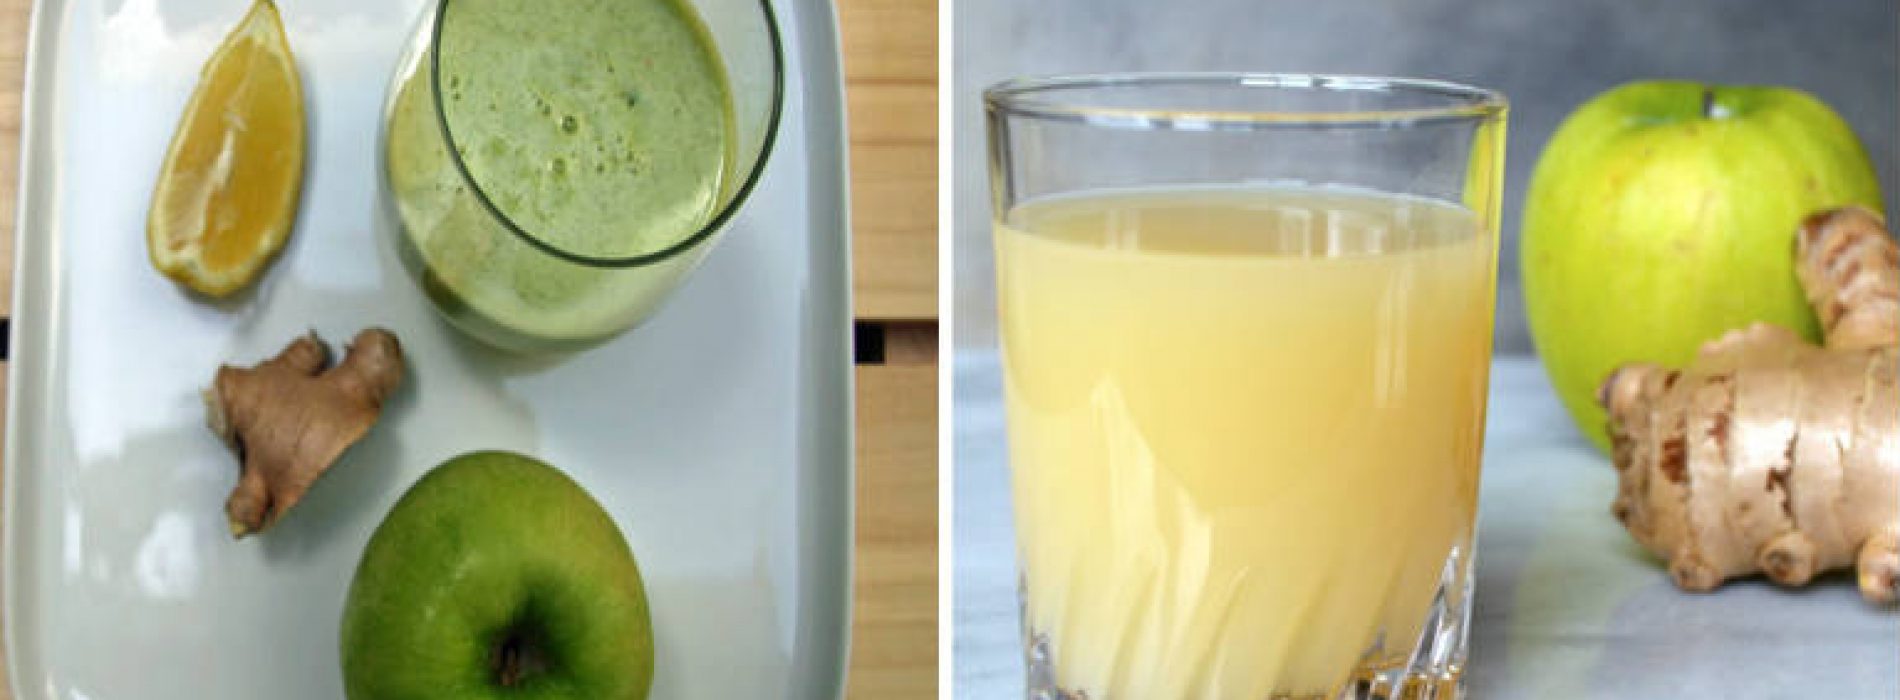 De 3 Sappen Darm reiniging: hoe Appel, Gember en Citroen kilo’s gifstoffen uit je lichaam kunnen spoelen